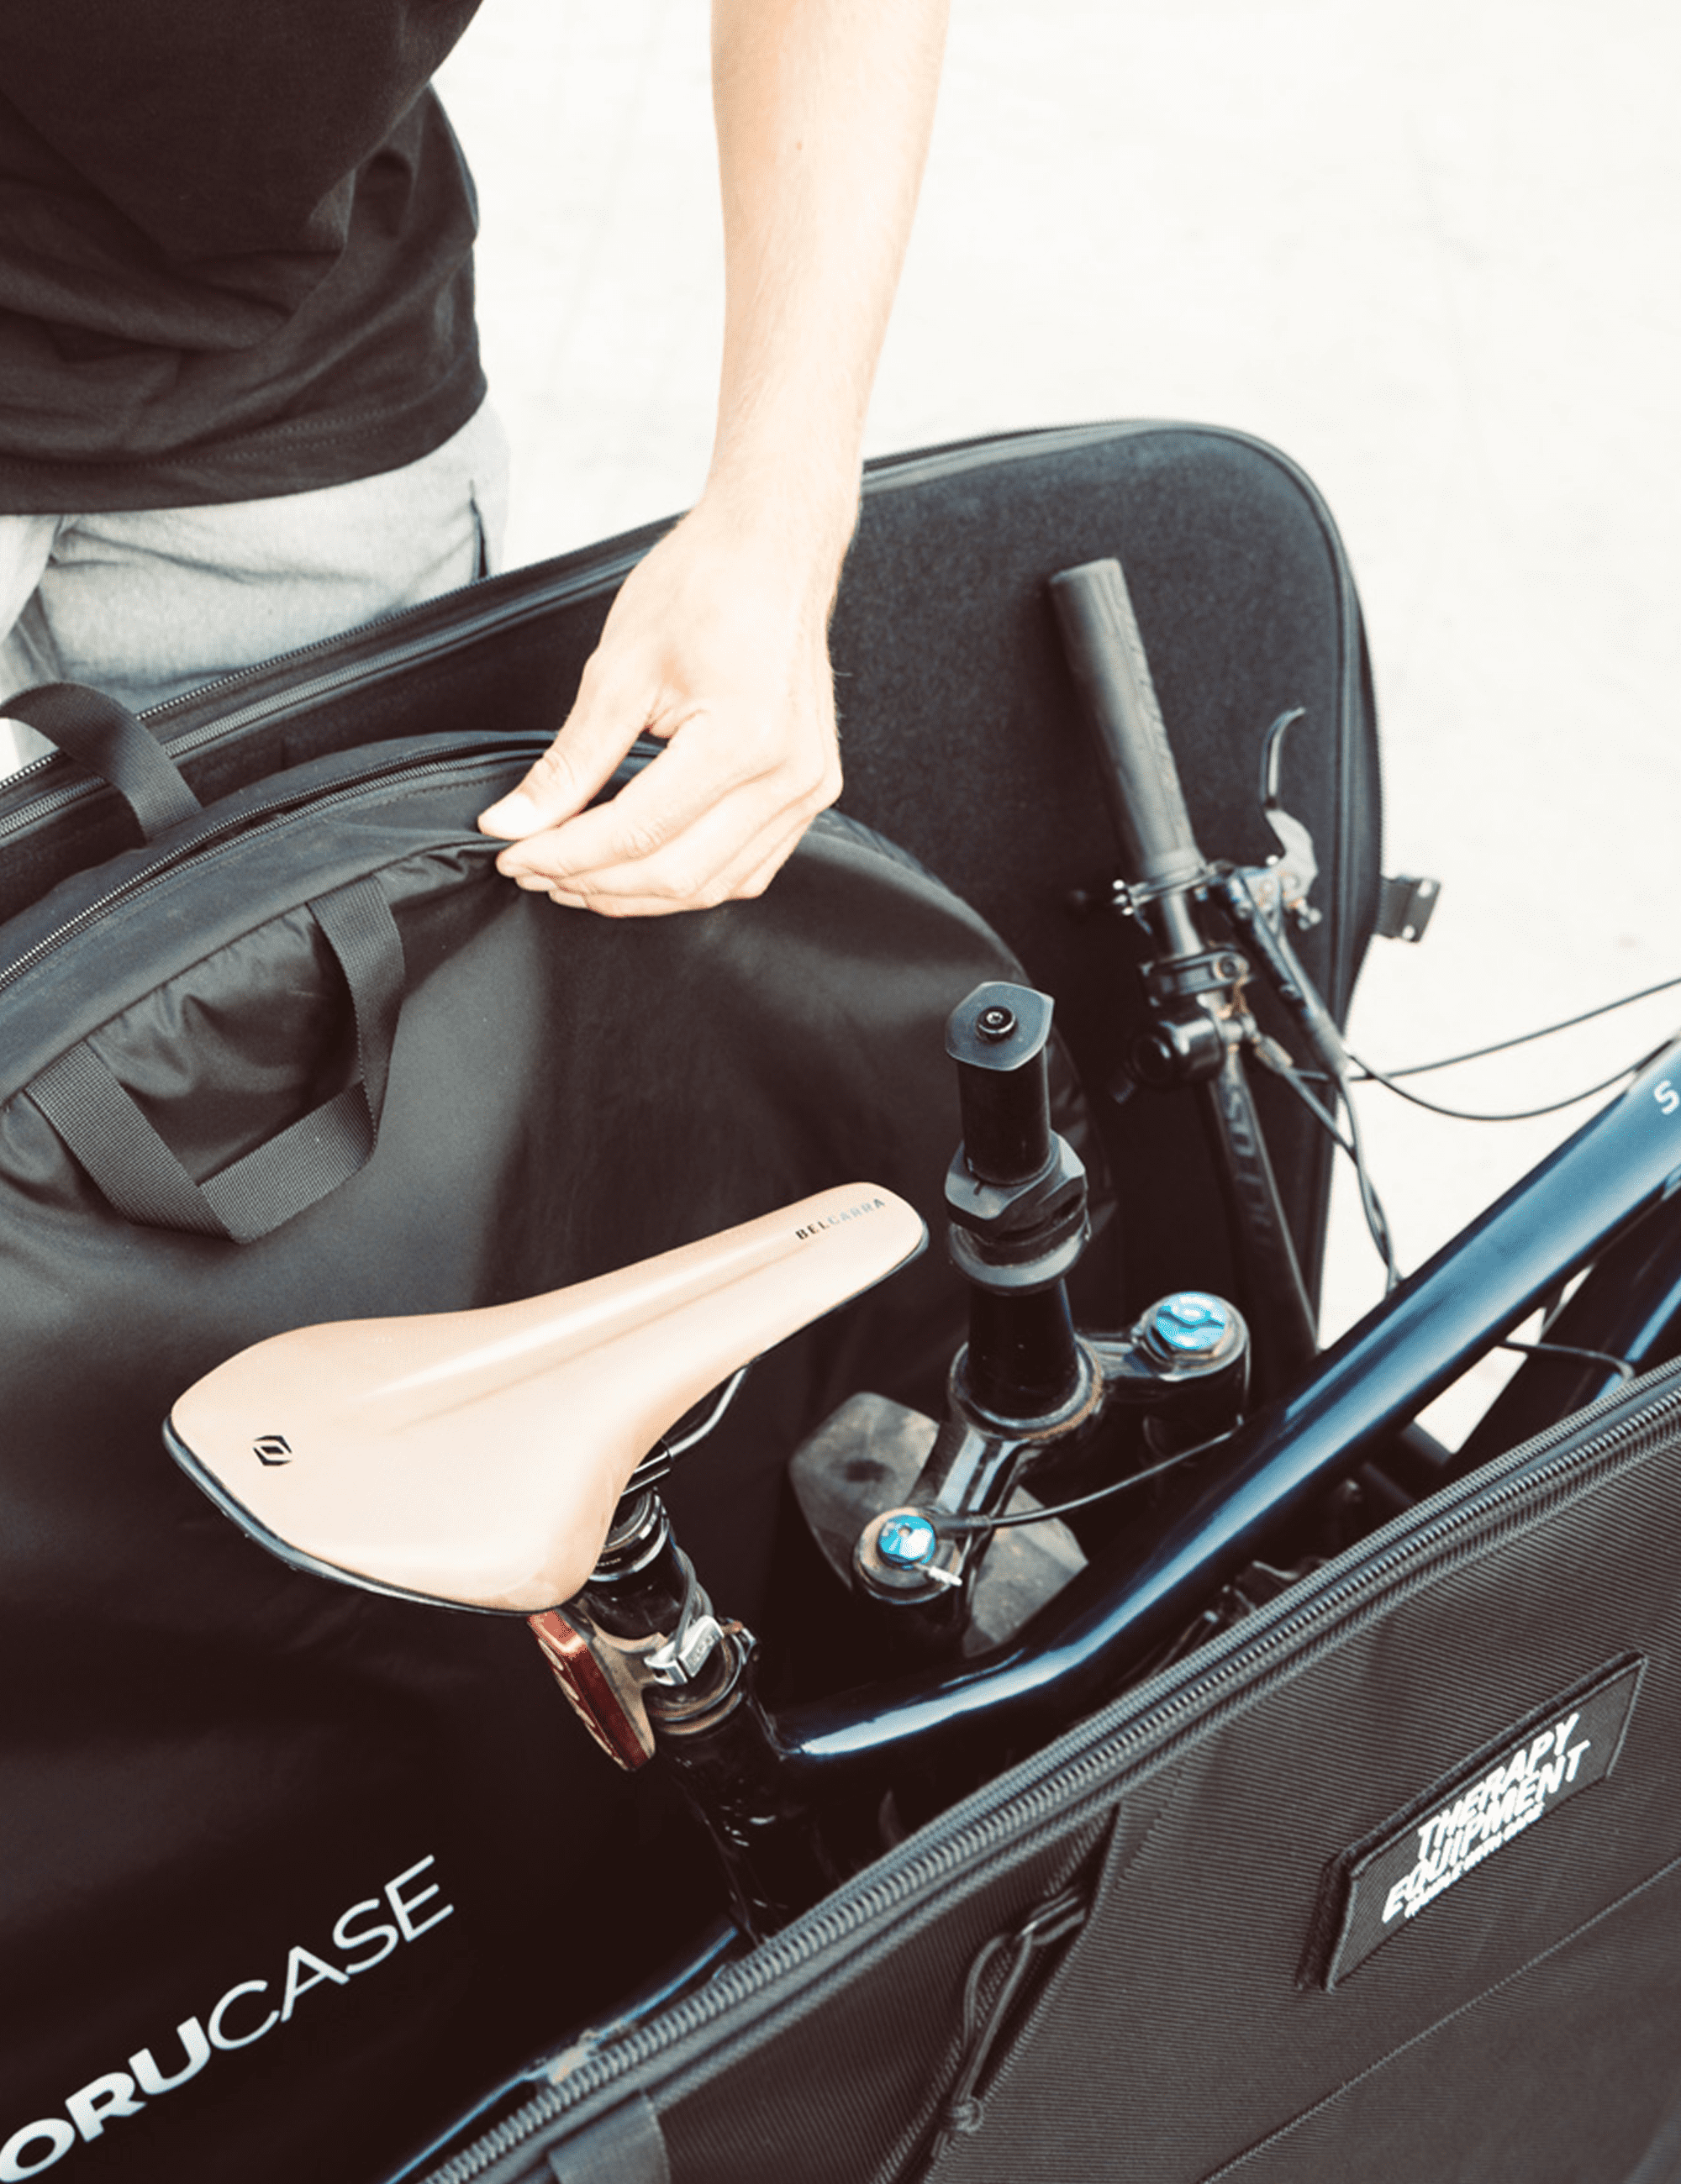 Bike Bags & Cases for Travel - Orucase